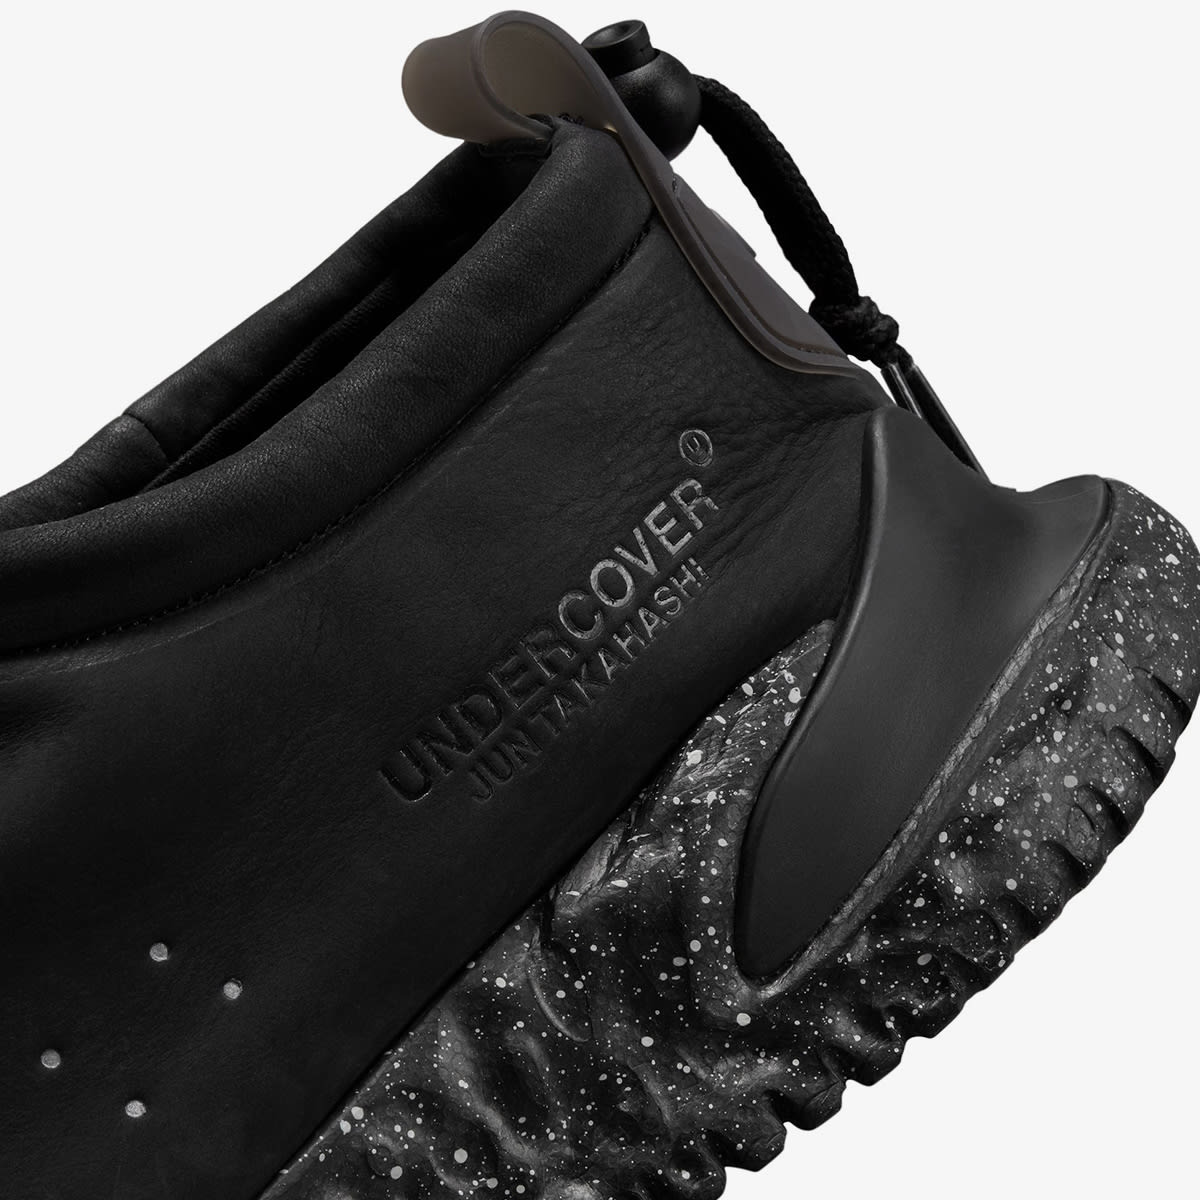 Nike X Undercover Moc Flow Sp (Black, Black & Black) | END. Launches